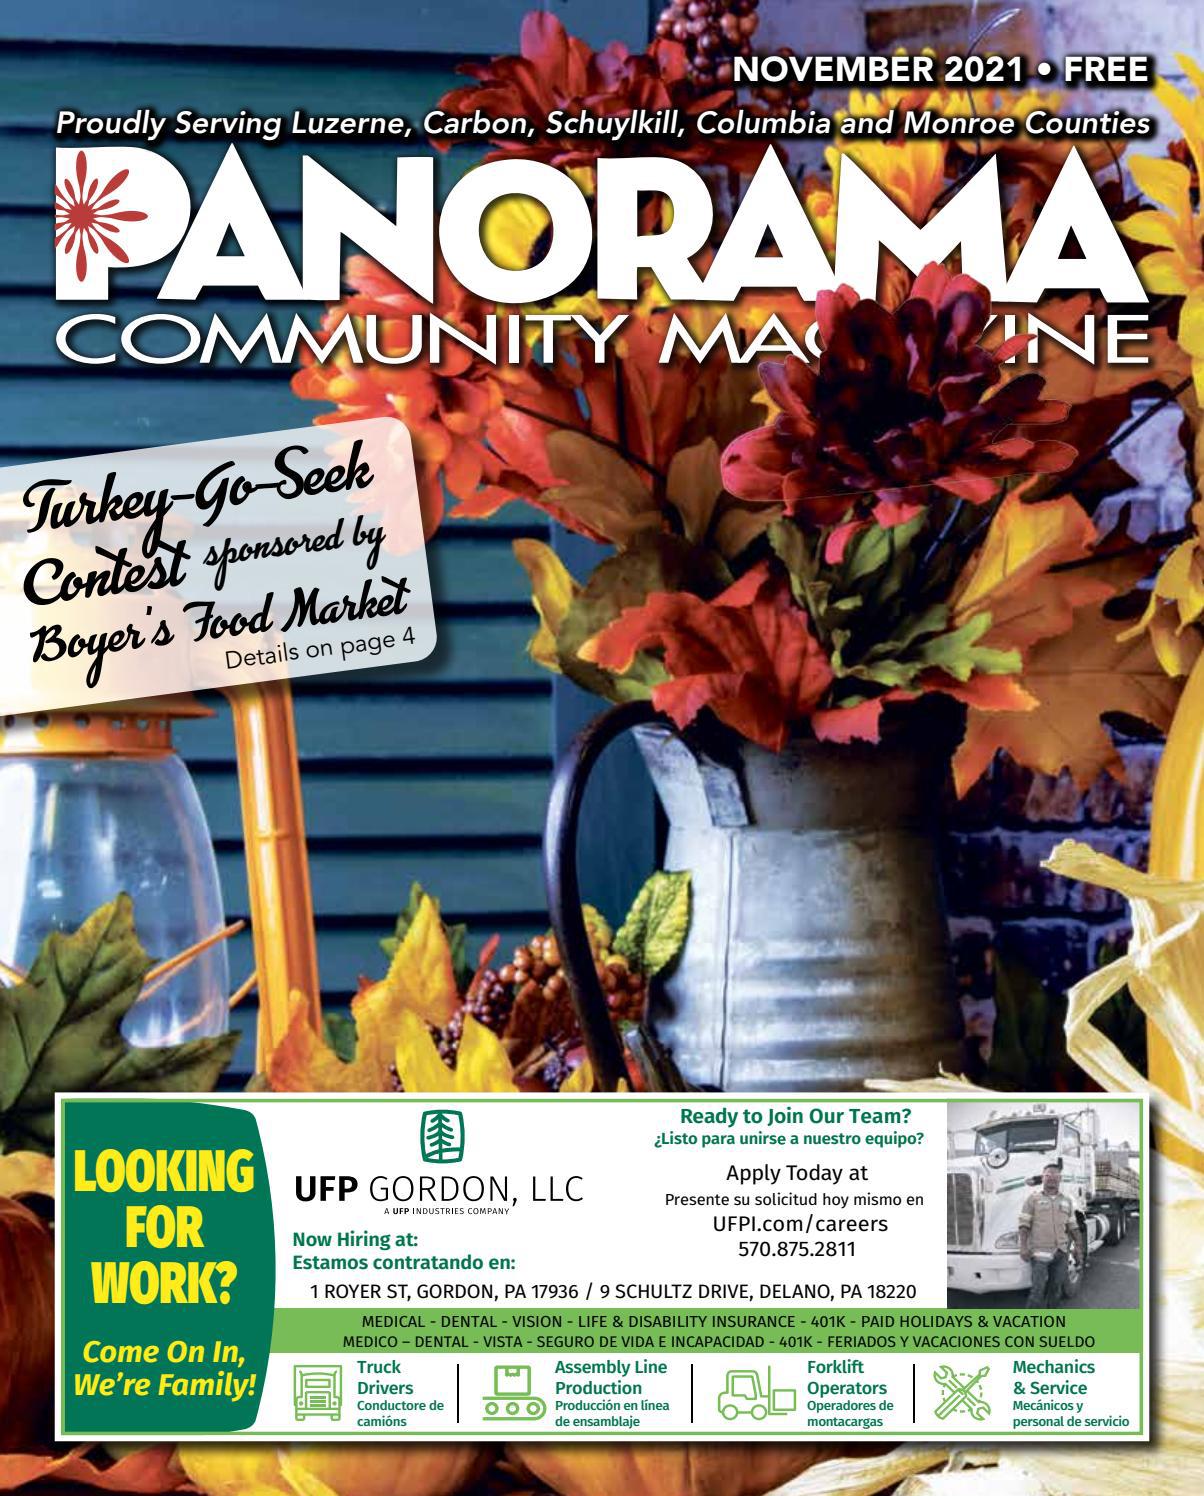 Panorama Community Magazine, November 2021